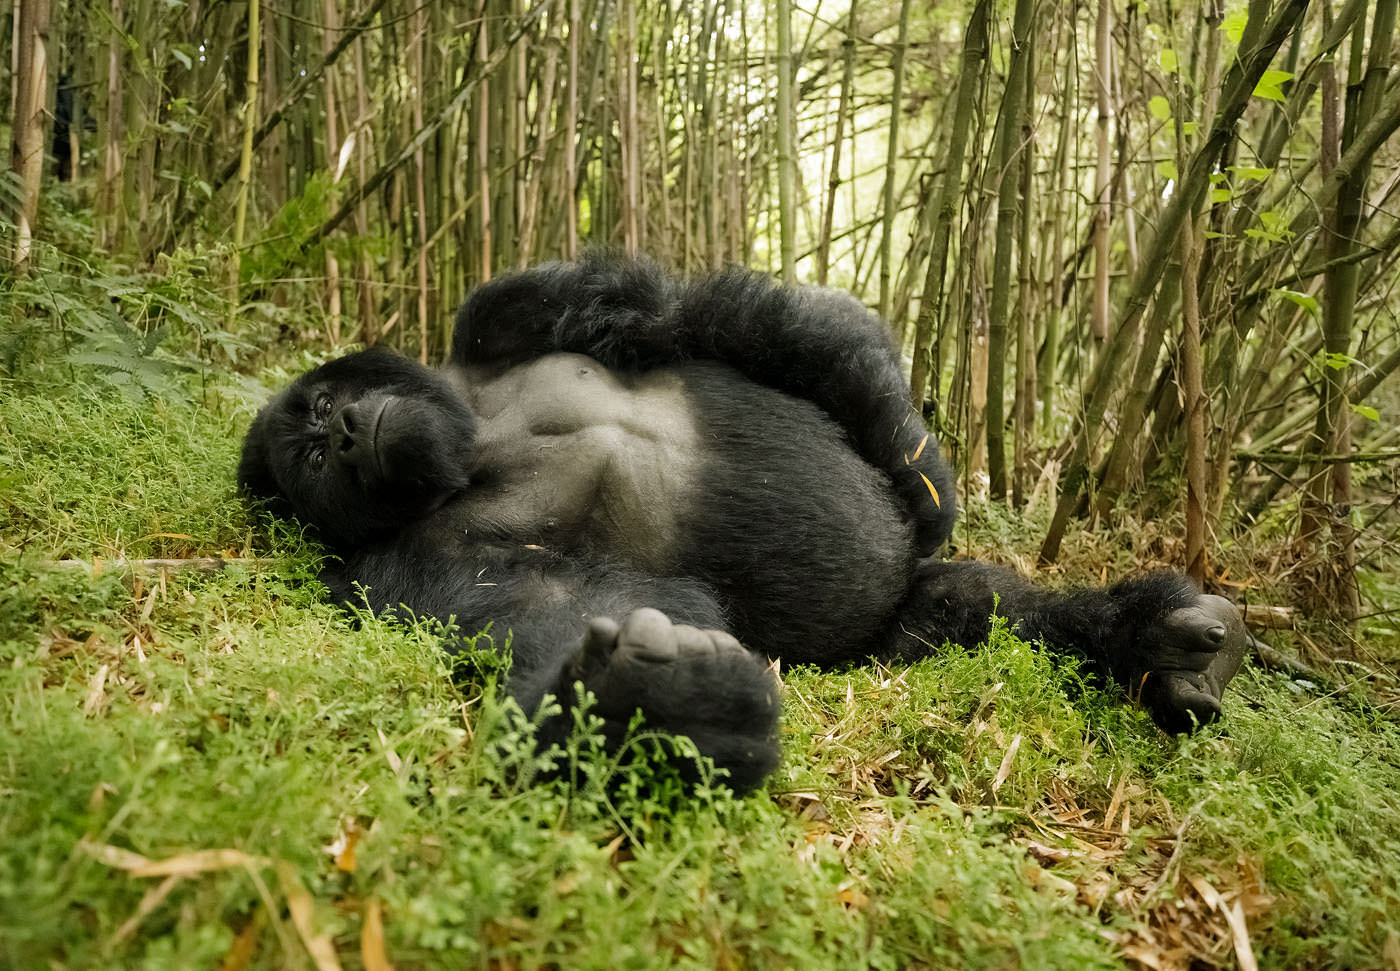 Mountain silverback gorillas